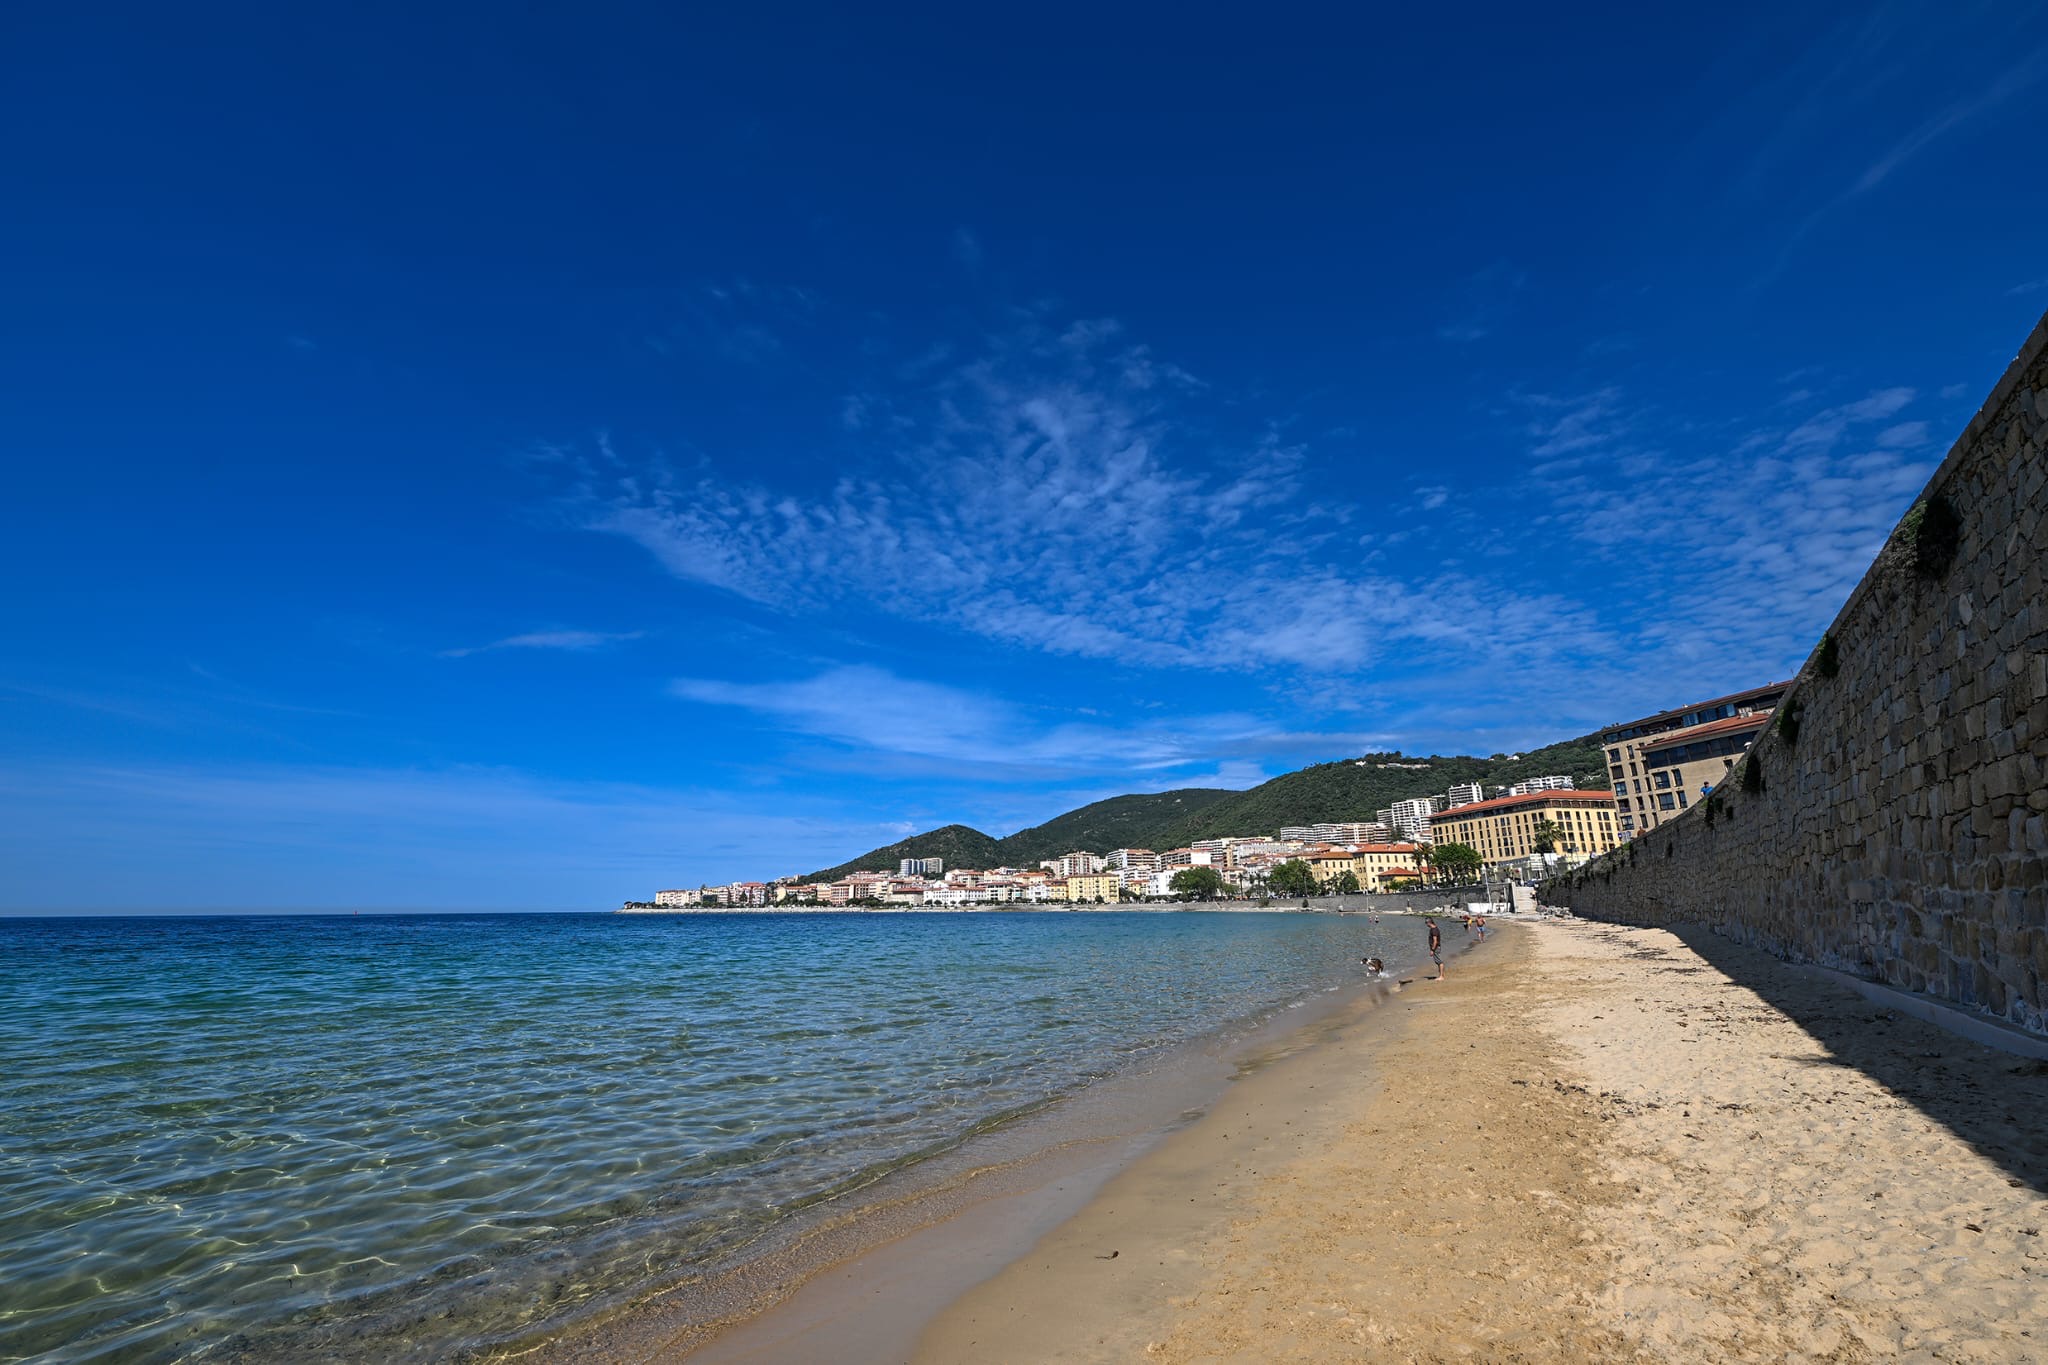 La plage de Saint-François connaît un phénomène important d'érosion côtière.